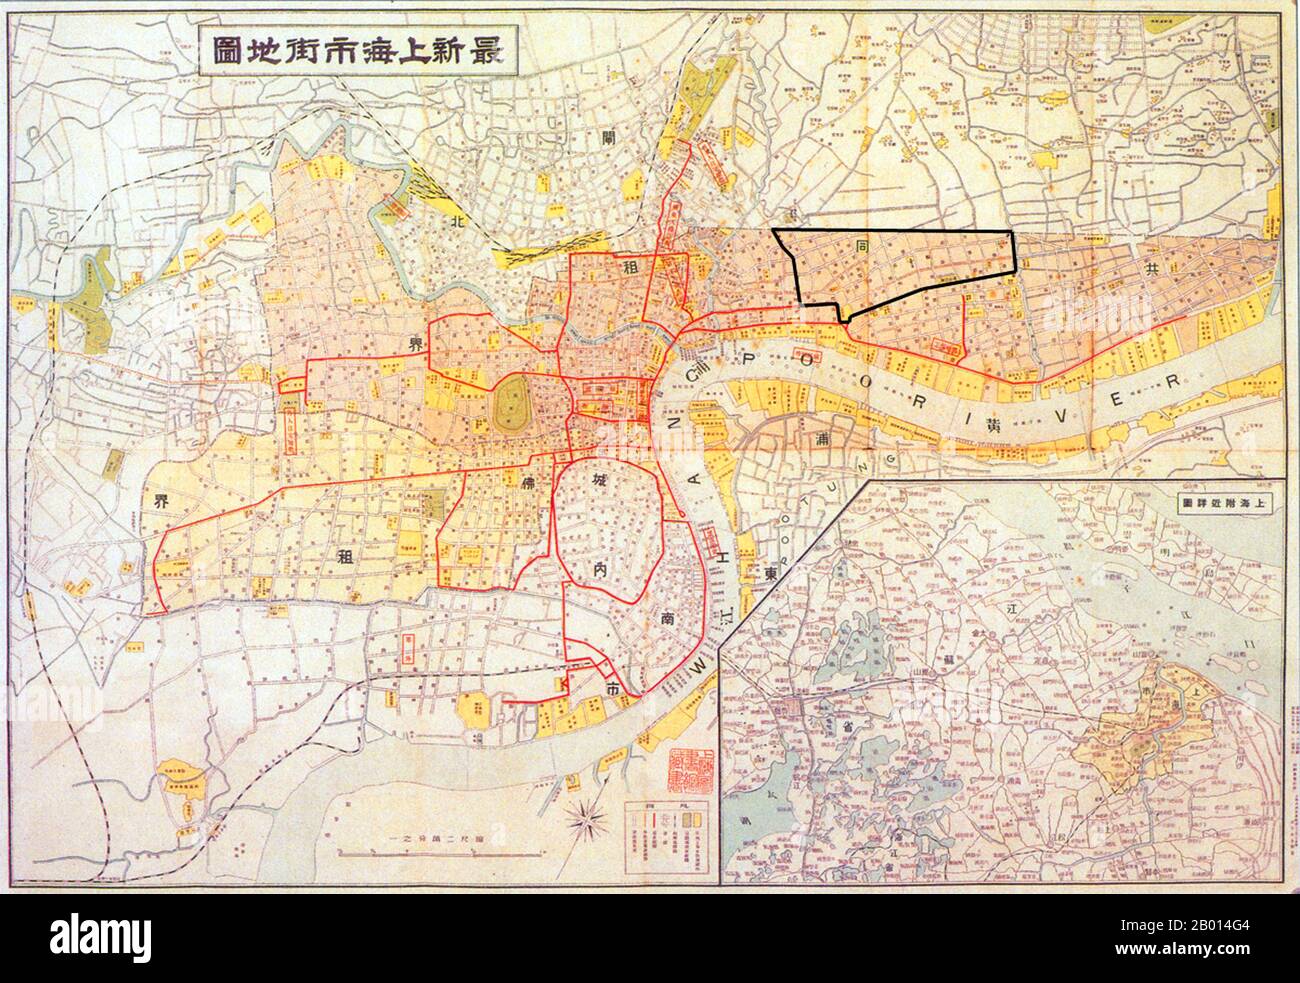 Cina: Mappa di Shanghai che mostra l'area del ghetto di Shanghai o 'settore ristretto per i rifugiati ebrei' (1939). La mappa è in cinese e in inglese, ma potrebbe essere stata fatta da o sotto gli auspici dei giapponesi che occupavano l'area di Shanghai, incluso il "ghetto ebraico" (ancora non formato) nel 1937, dopo la battaglia di Shanghai. Il ghetto di Shanghai fu fondato dalle autorità di occupazione giapponesi nel 1941 e liberato nel 1945. Foto Stock